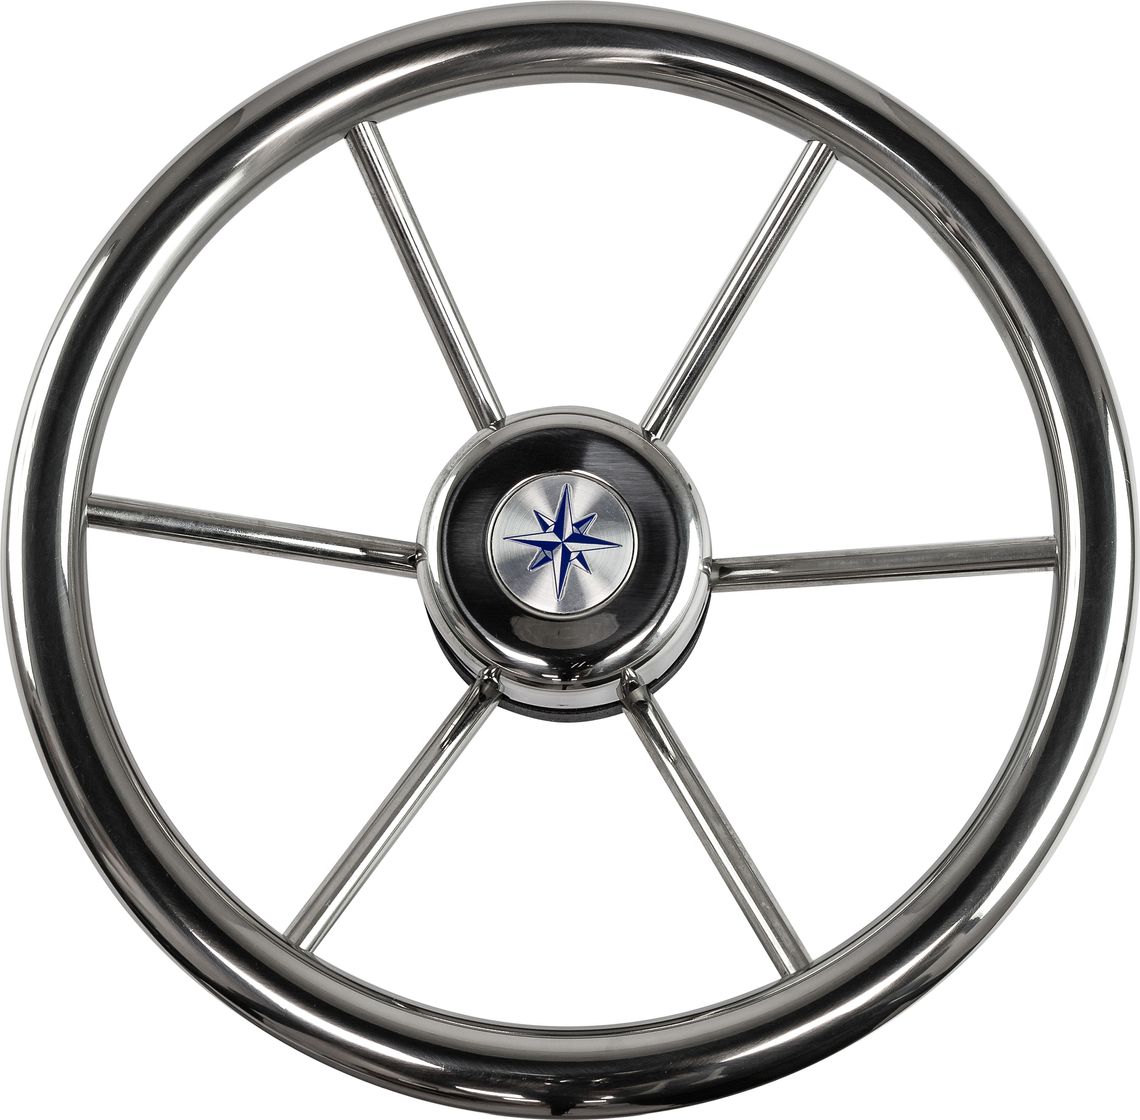 Рулевое колесо LEADER INOX нержавеющий обод серебряные спицы д. 320 мм VN7332-22 колесо для тачки variant 11110 11090 камерное 4 80 4 00 8 с подшипником 12 мм обод металл к99 1